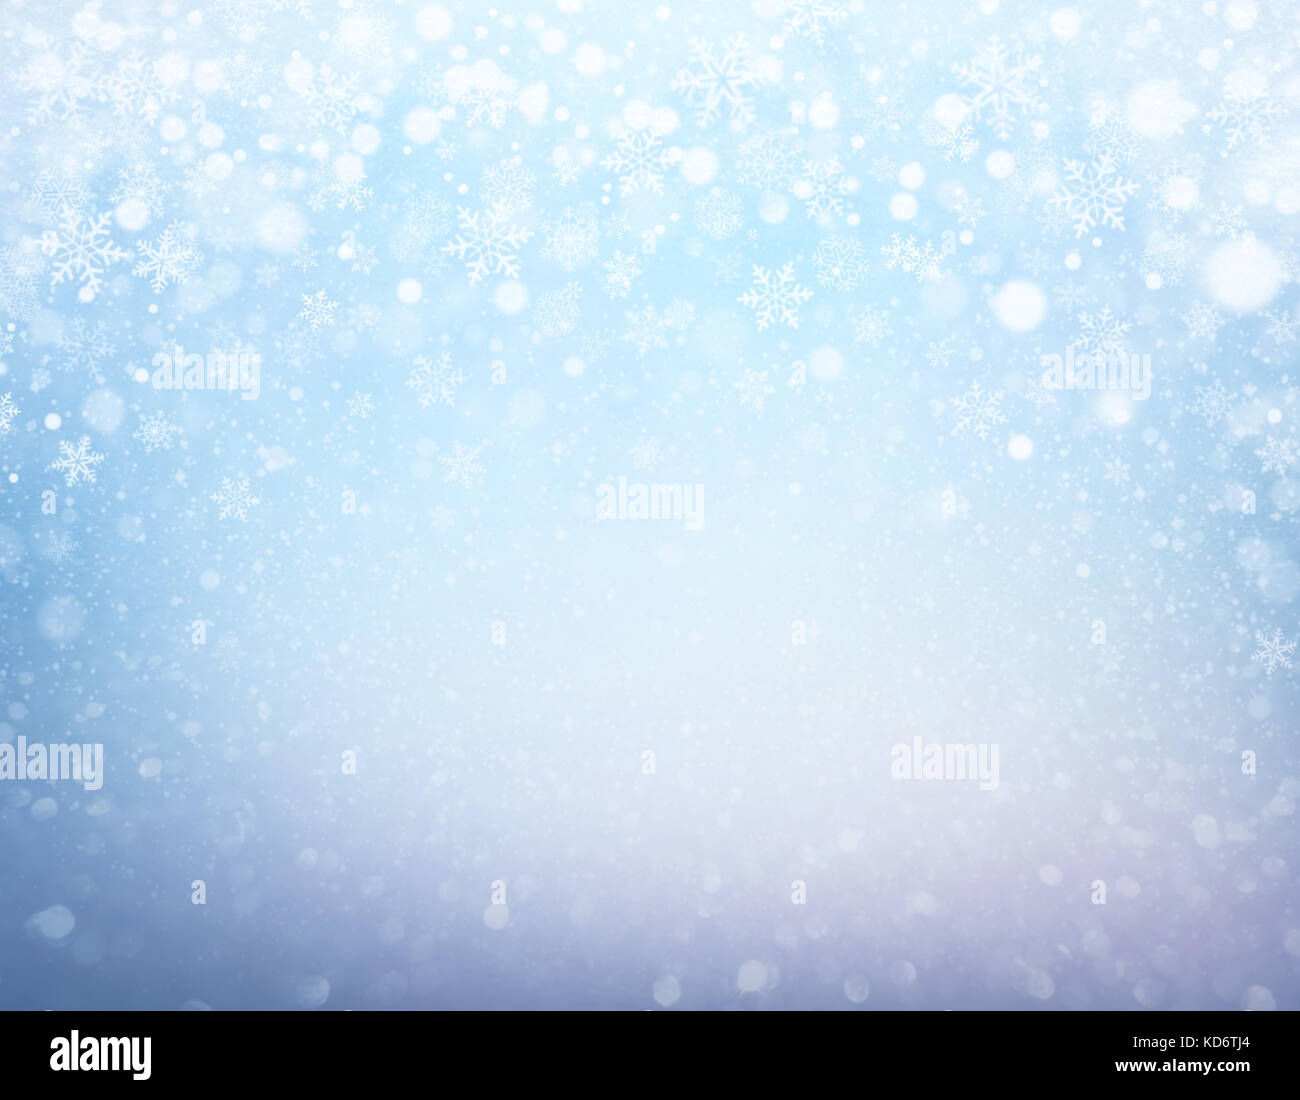 Schneeflocken und Schneefall auf einem gefrorenen blauer Hintergrund - Winter Material Stockfoto